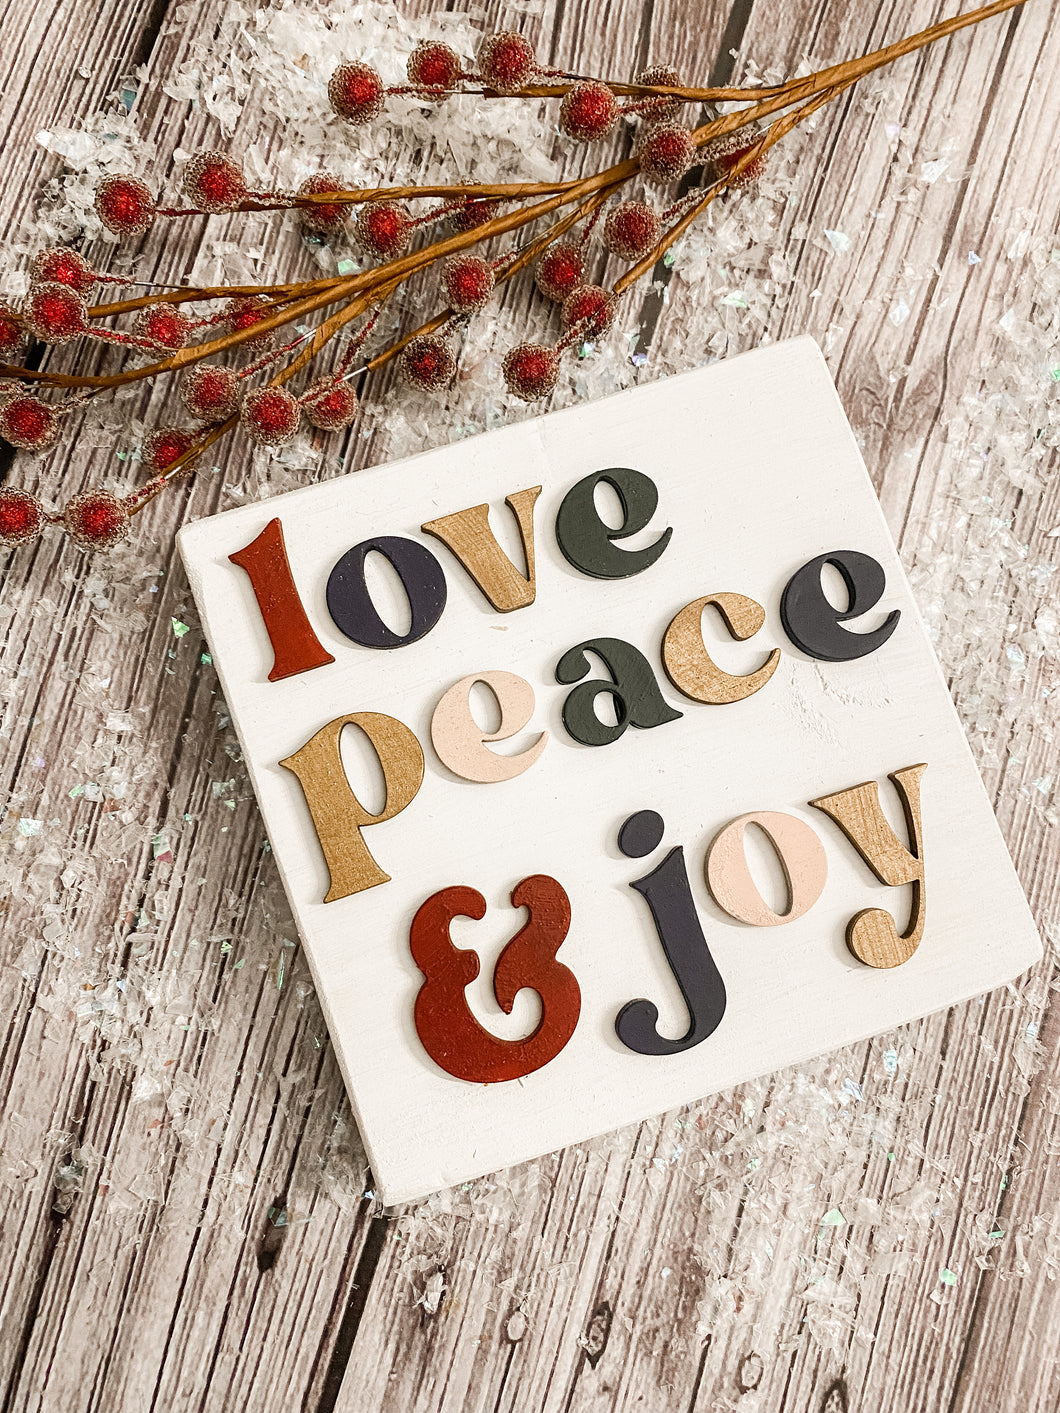 Love, Peace & Joy Block